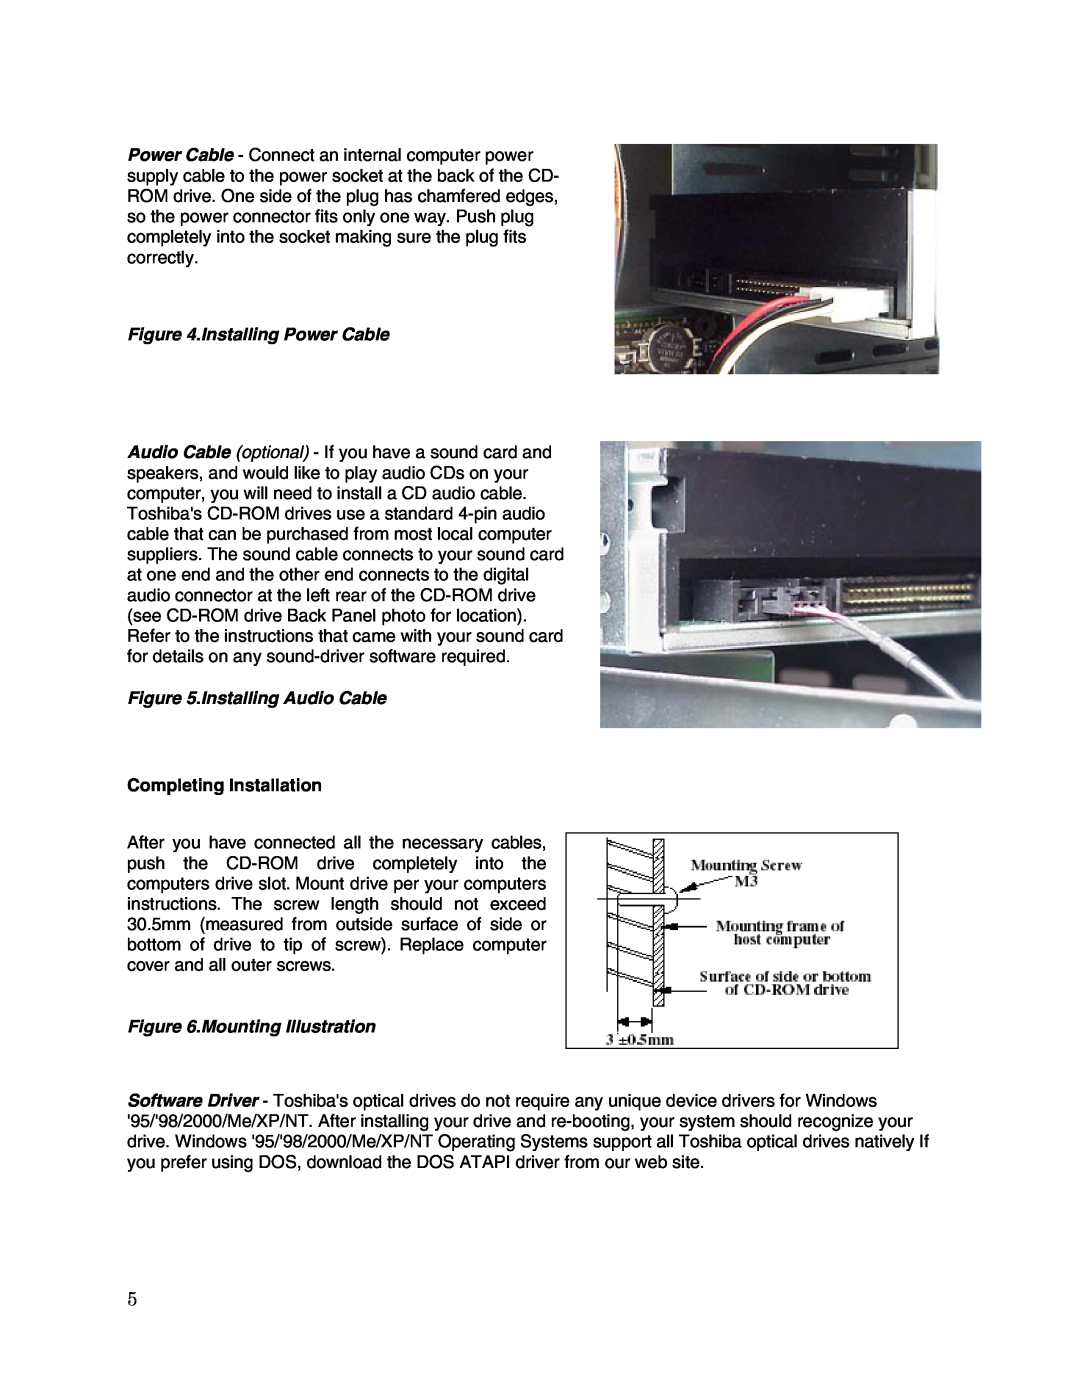 Toshiba XM-6802B user manual Installing Power Cable, Installing Audio Cable, Completing Installation, Mounting Illustration 